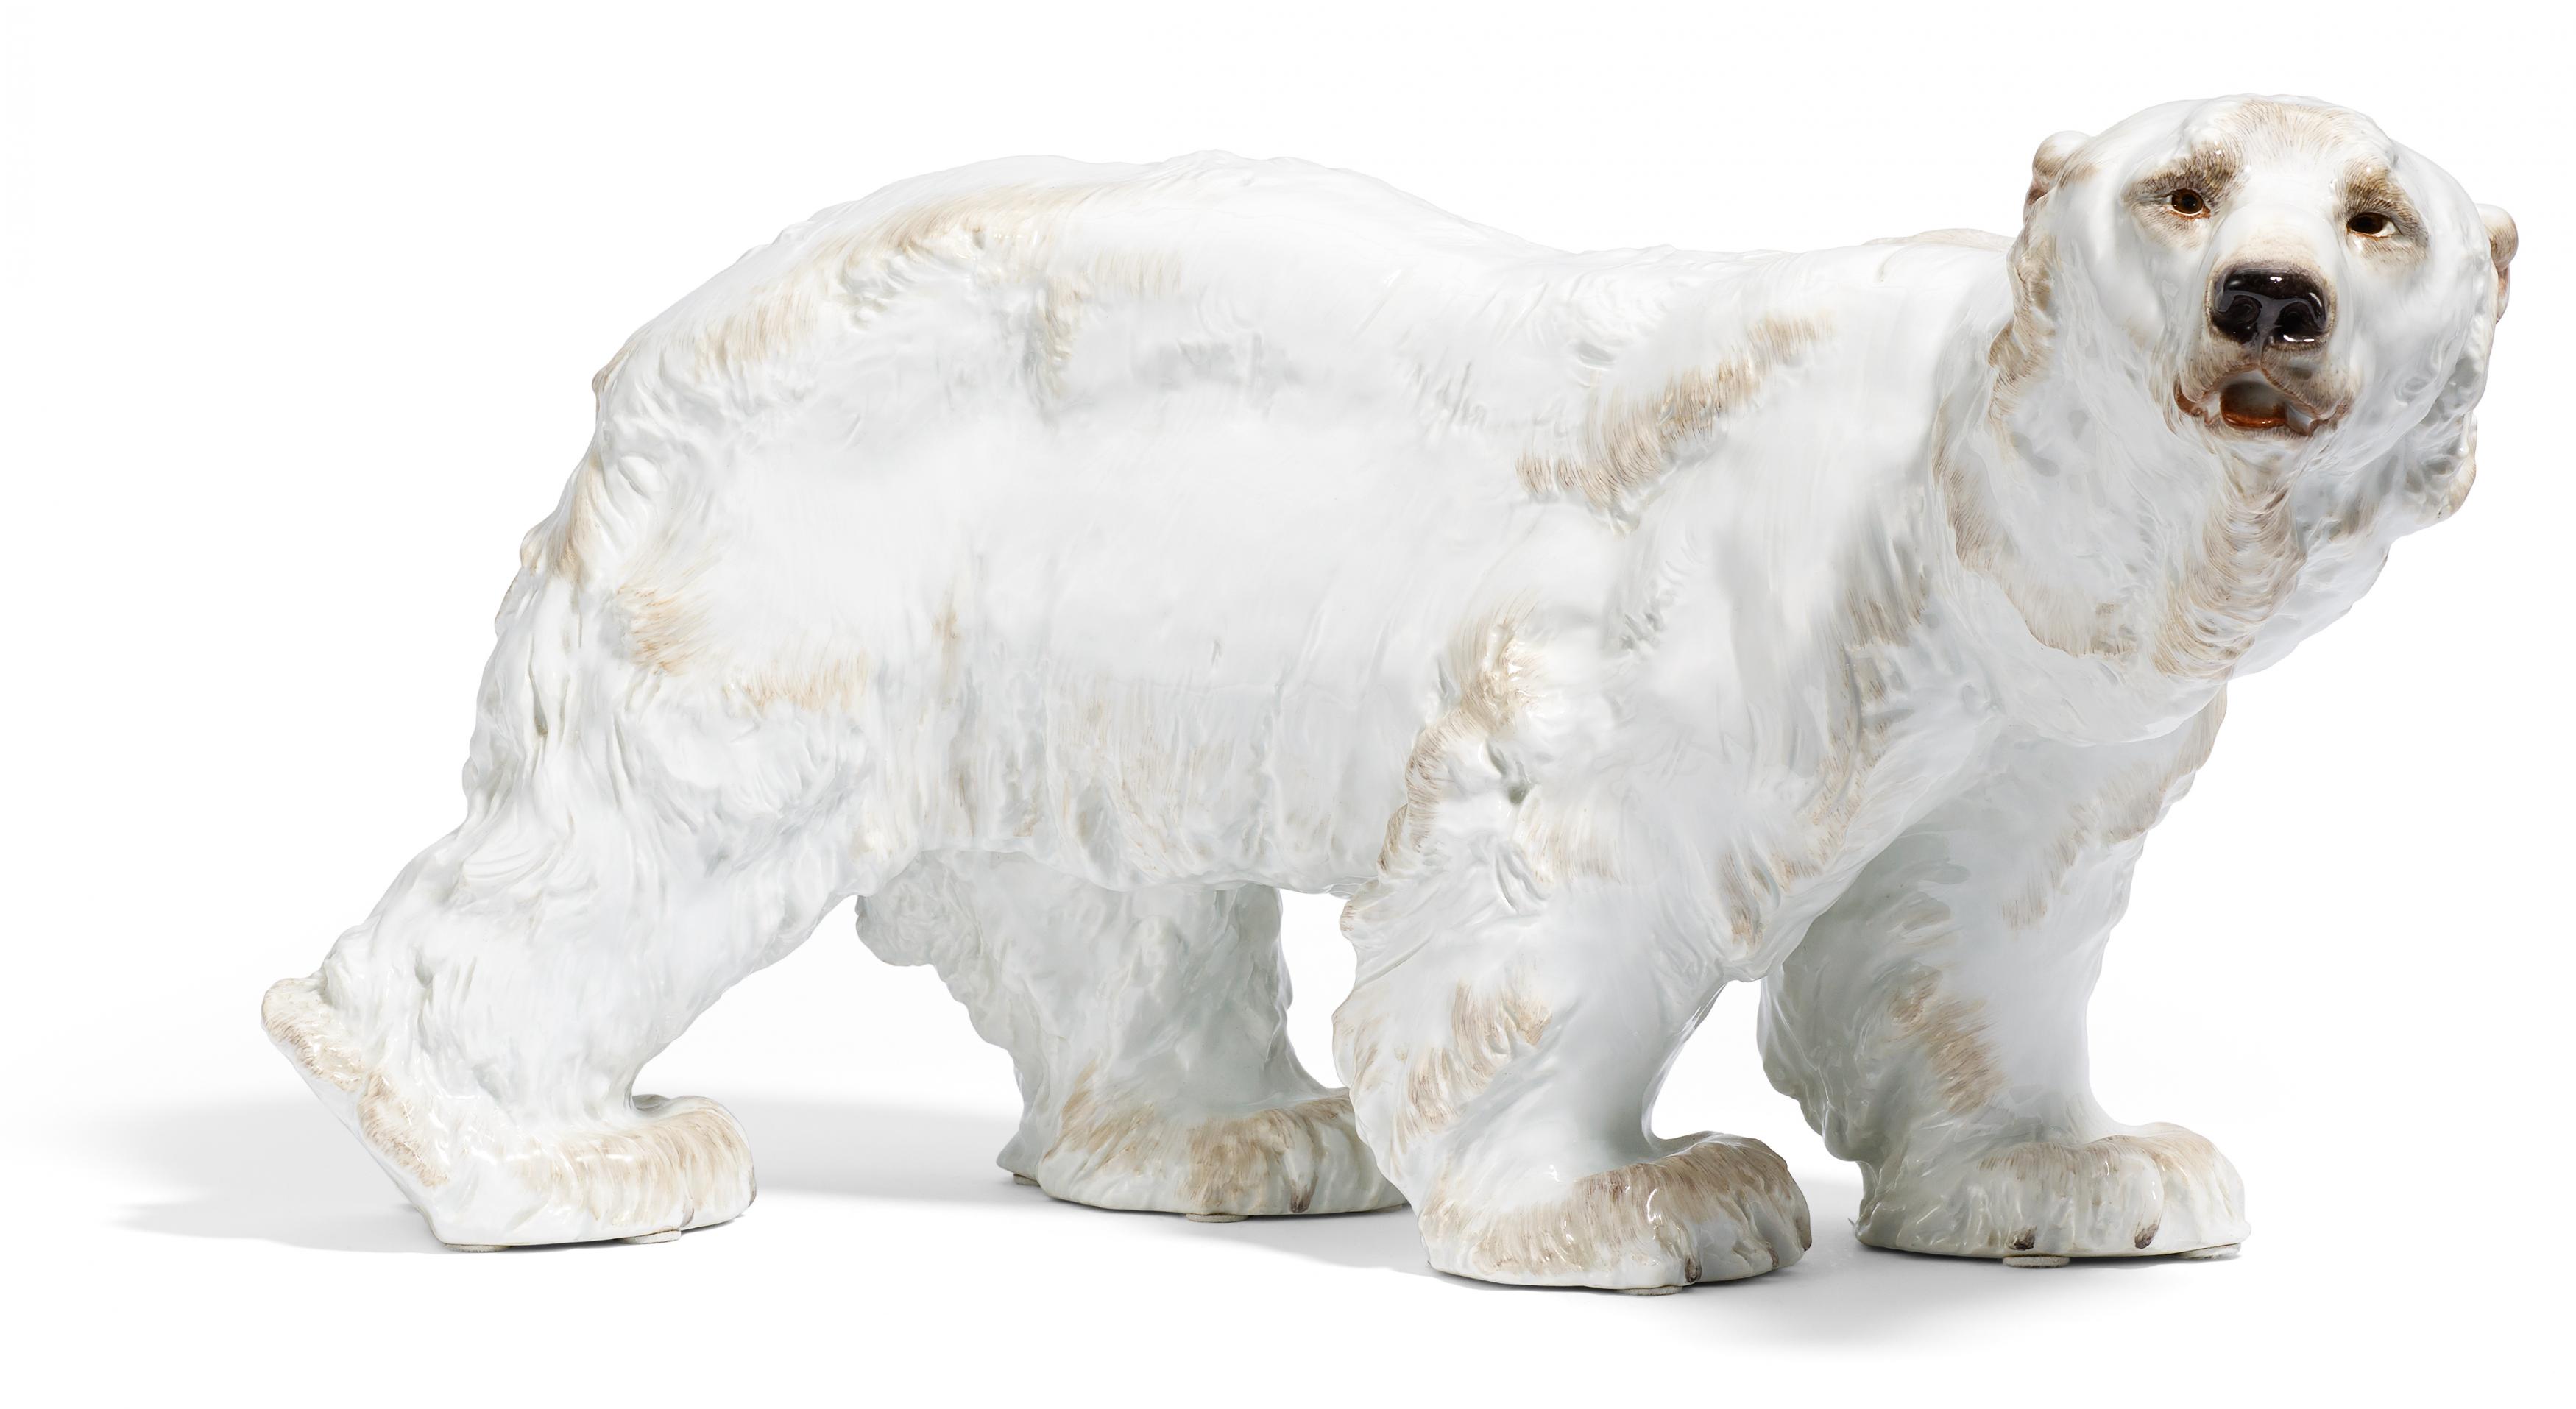 PORCELAIN FIGURE OF A LARGE POLAR BEAR. Meissen. 1991. Design O. Jarl 1903. Porcelain, sparingly